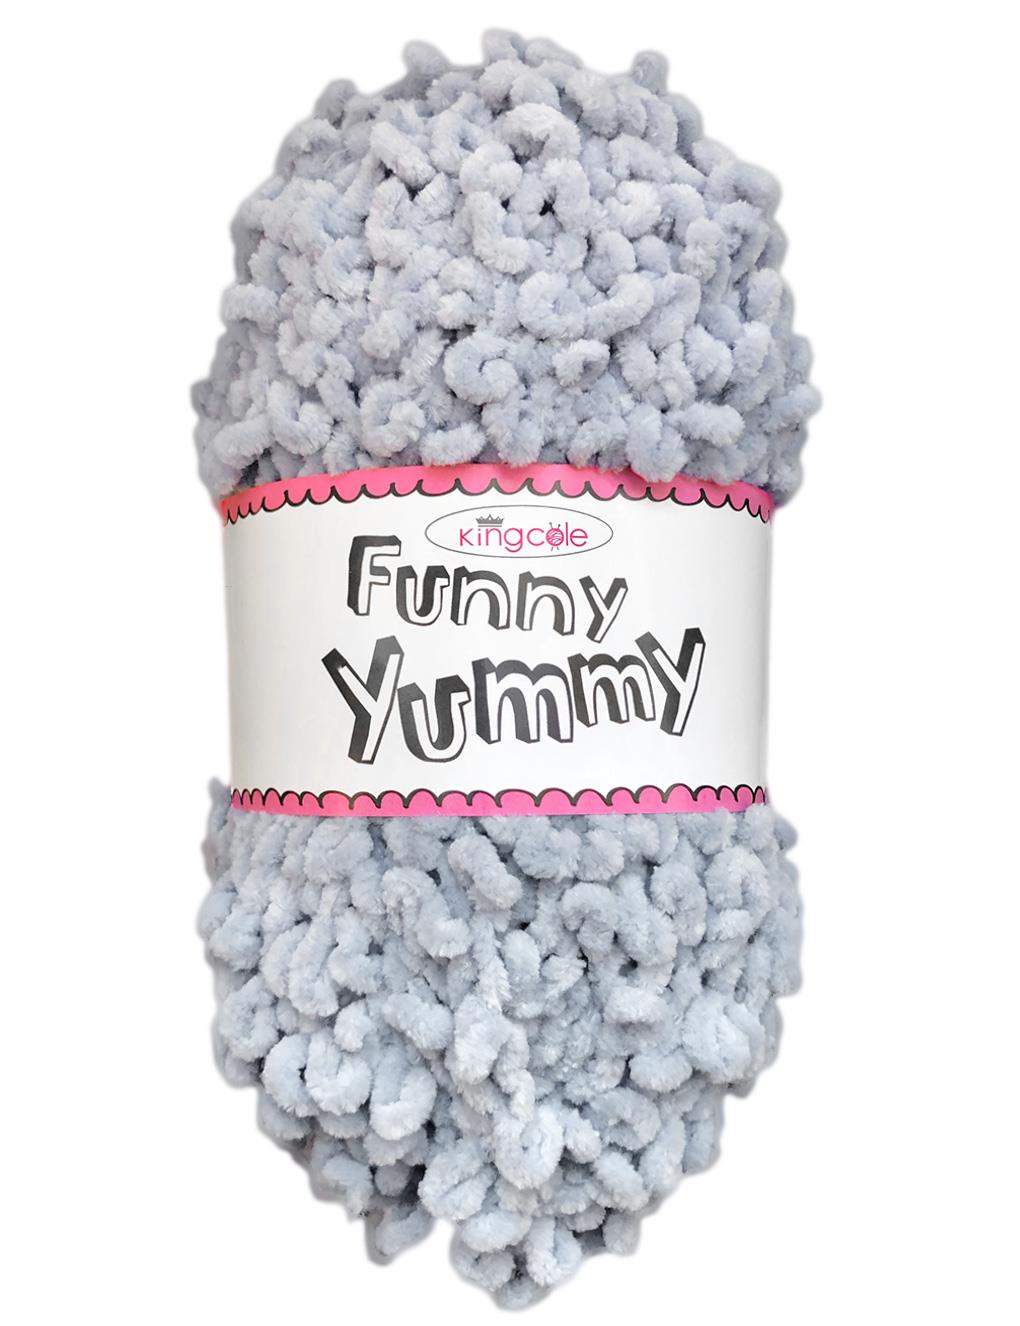 King Cole Funny Yummy Silver (4144) chenille yarn - 100g